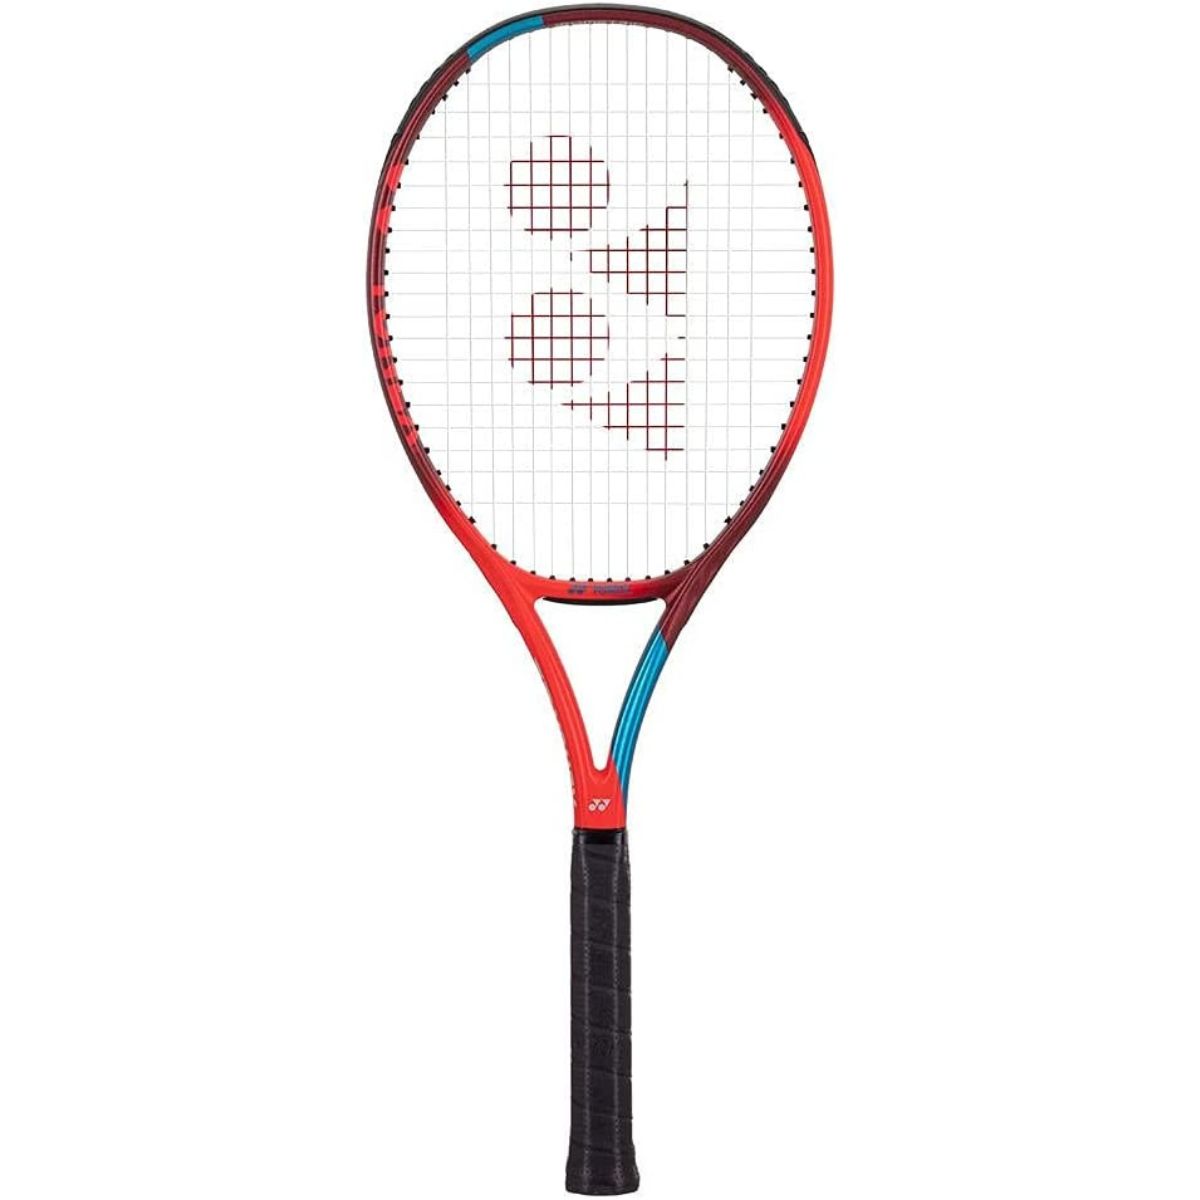 Yonex VCORE 100 tennis racket review